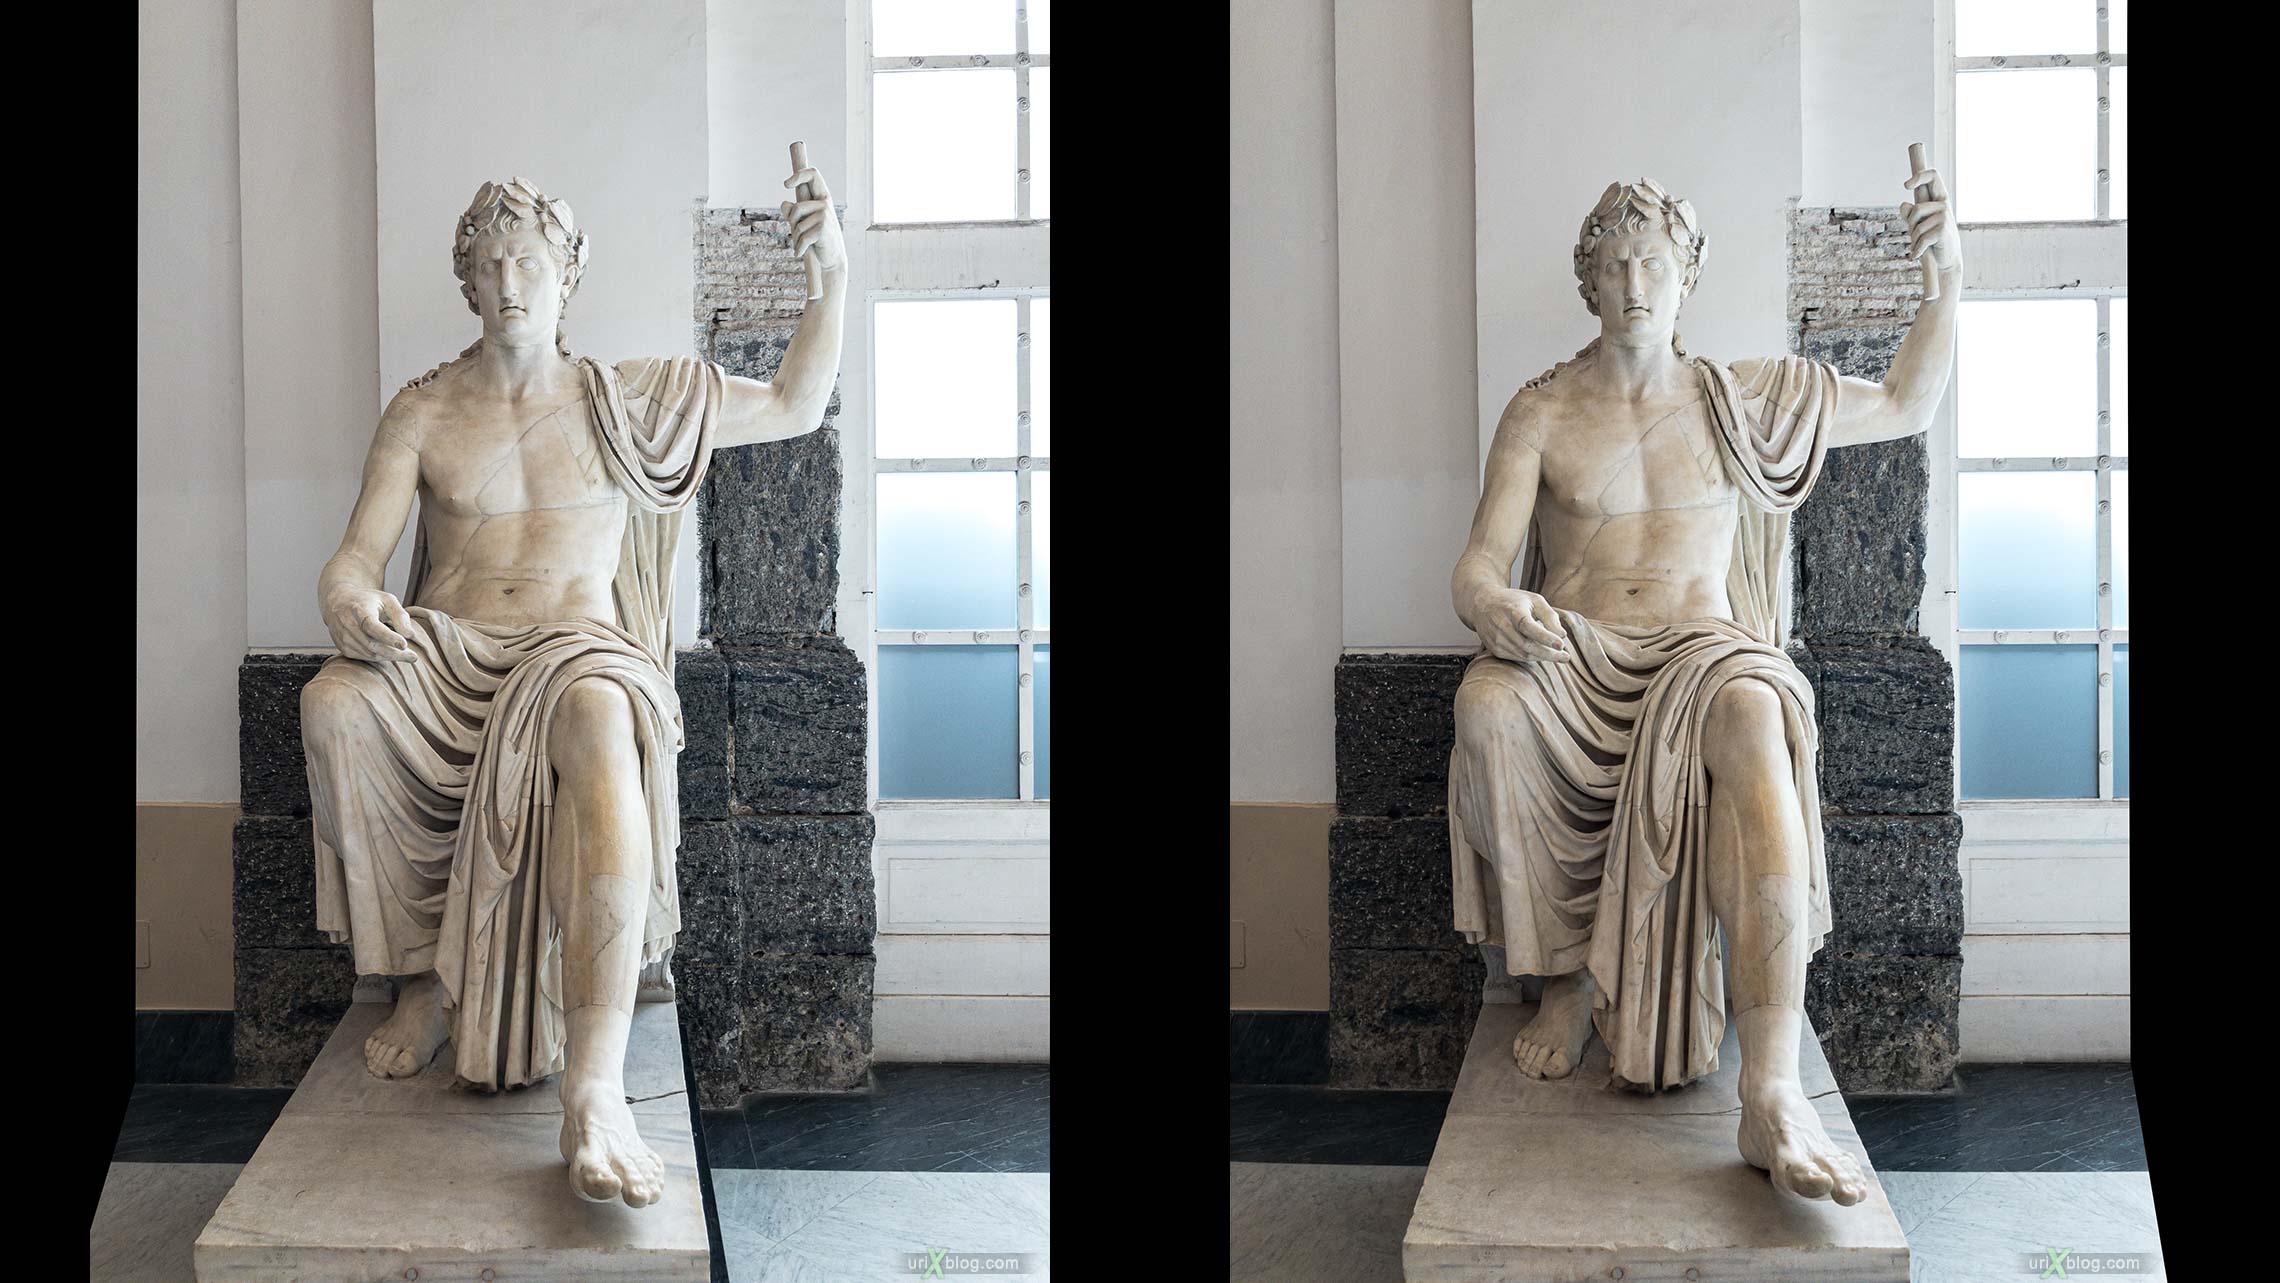 статуя, Национальный археологический музей Неаполя, Древний Рим, Помпеи, выставка, Неаполь, Италия, 3D, перекрёстная стереопара, стерео, стереопара